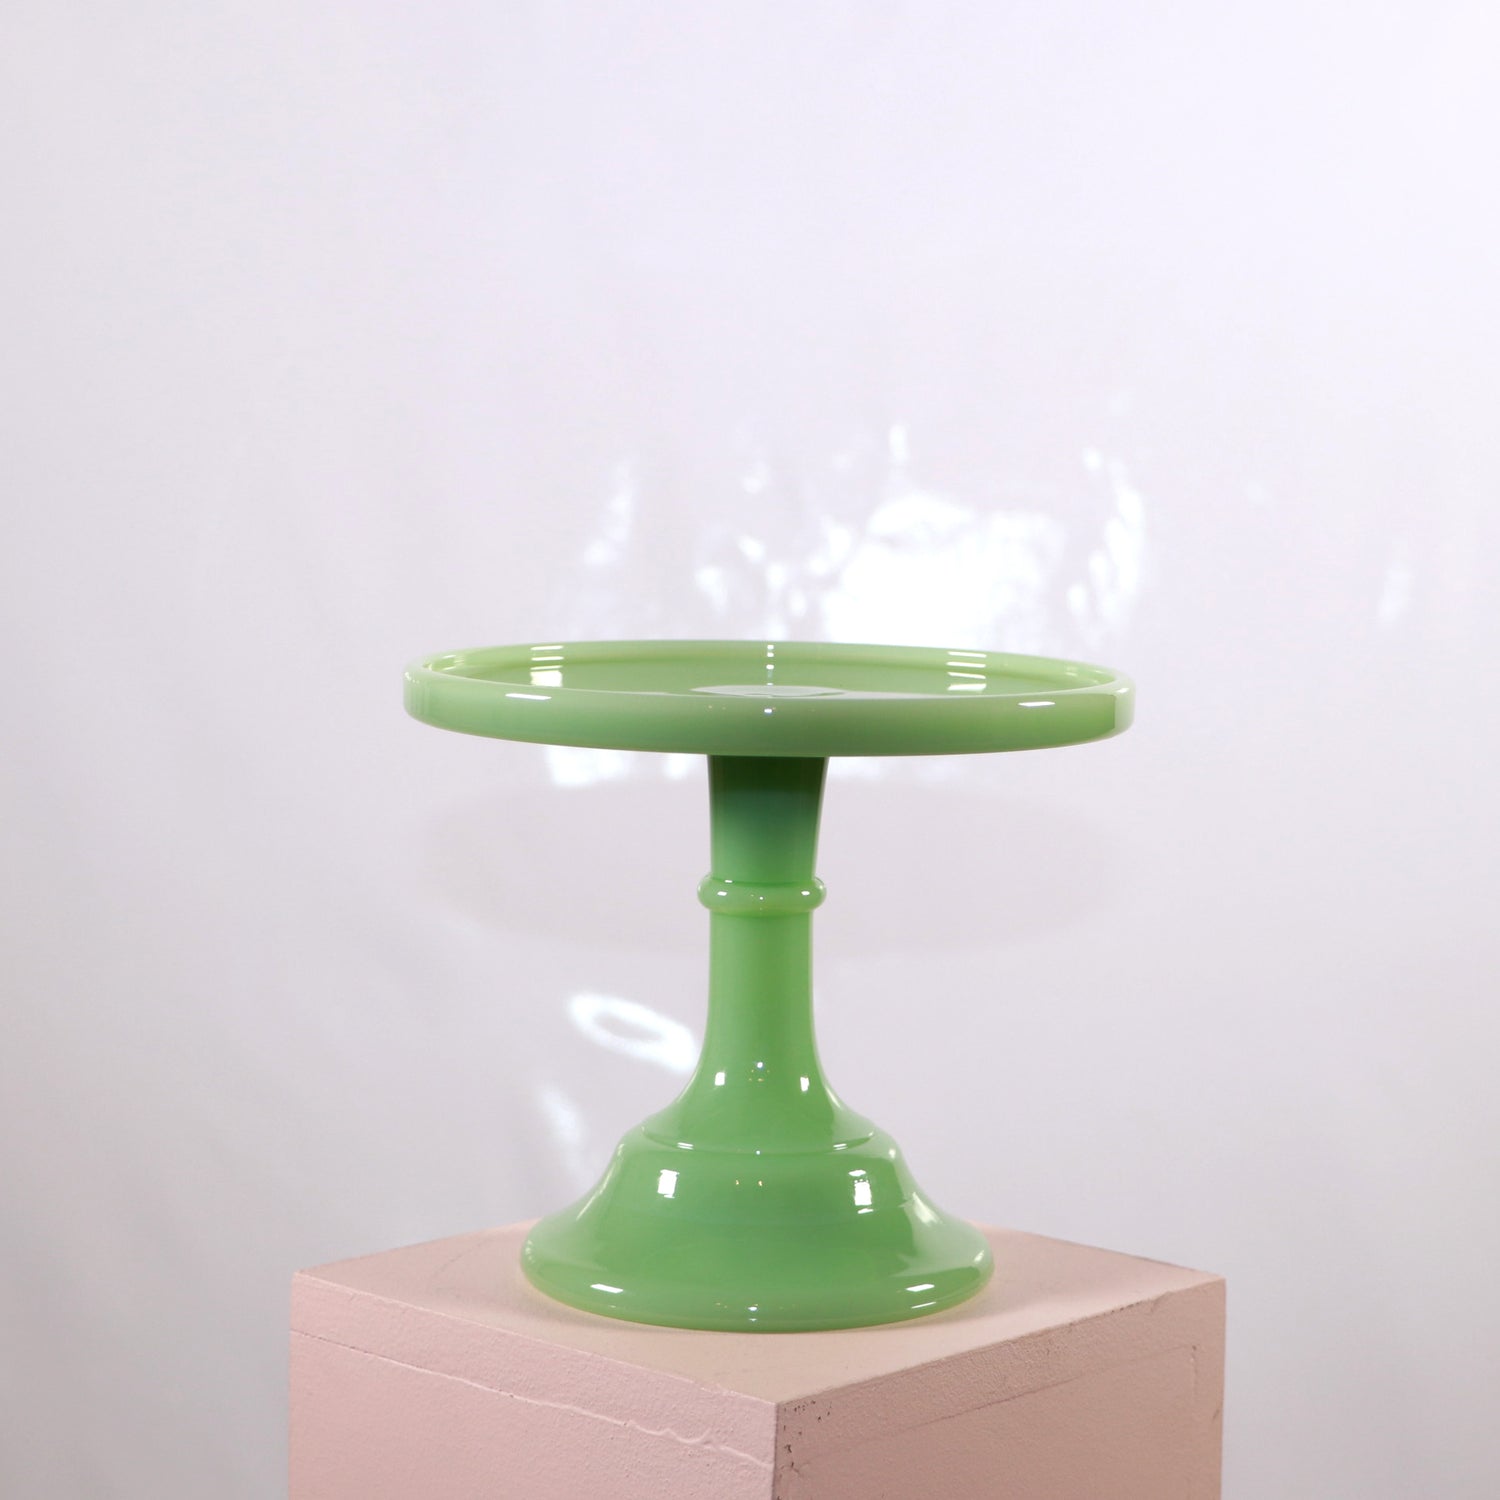 Mosser jadeite cake plate stand